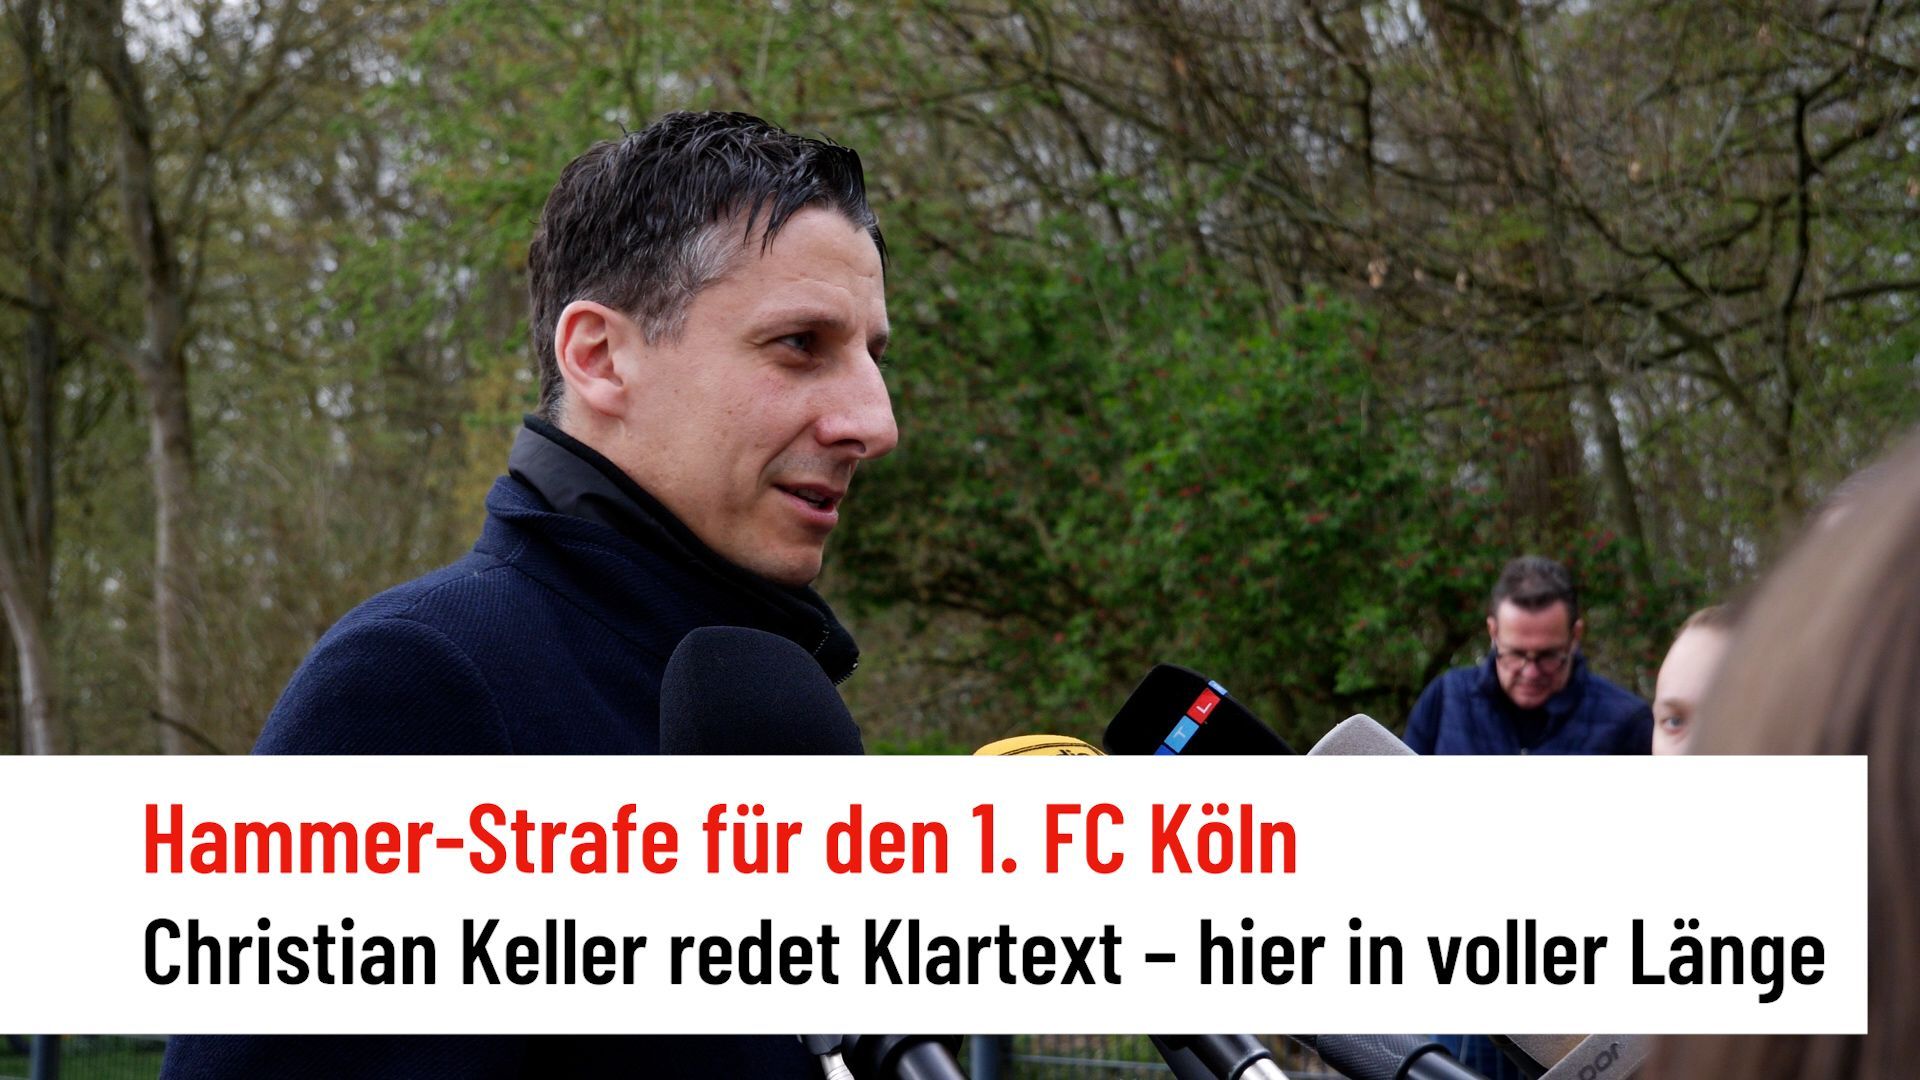 Hammer penalty for 1st FC Cologne: Christian Keller on transfer ban